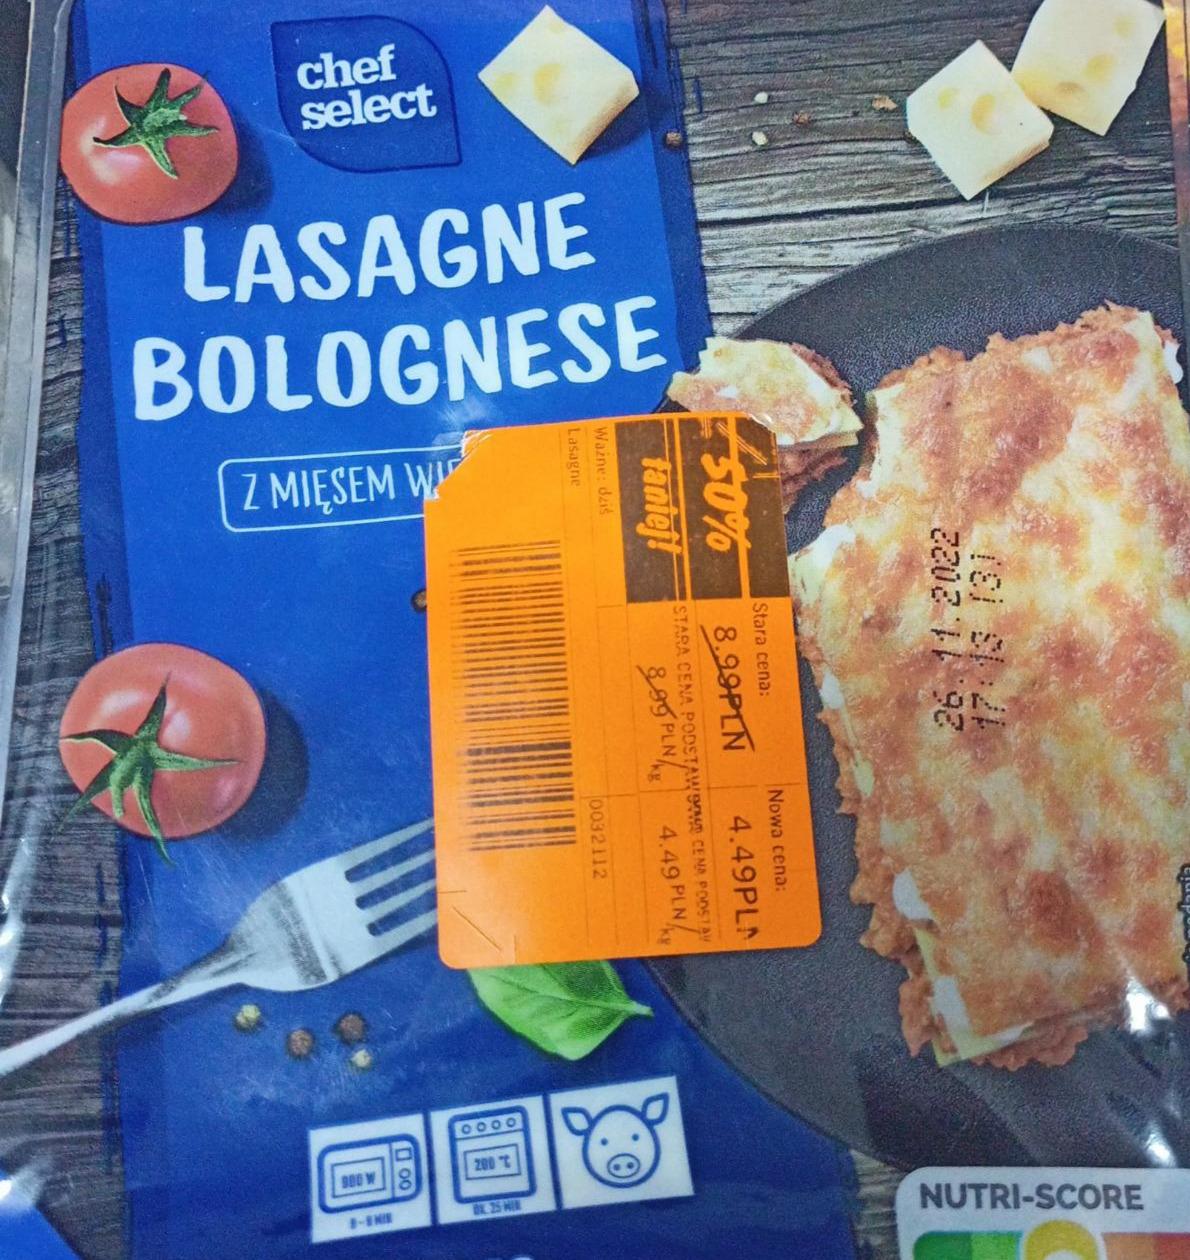 Lasagne bolognese z mięsem wieprzowym Chef Select - kalorie, kJ i wartości  odżywcze